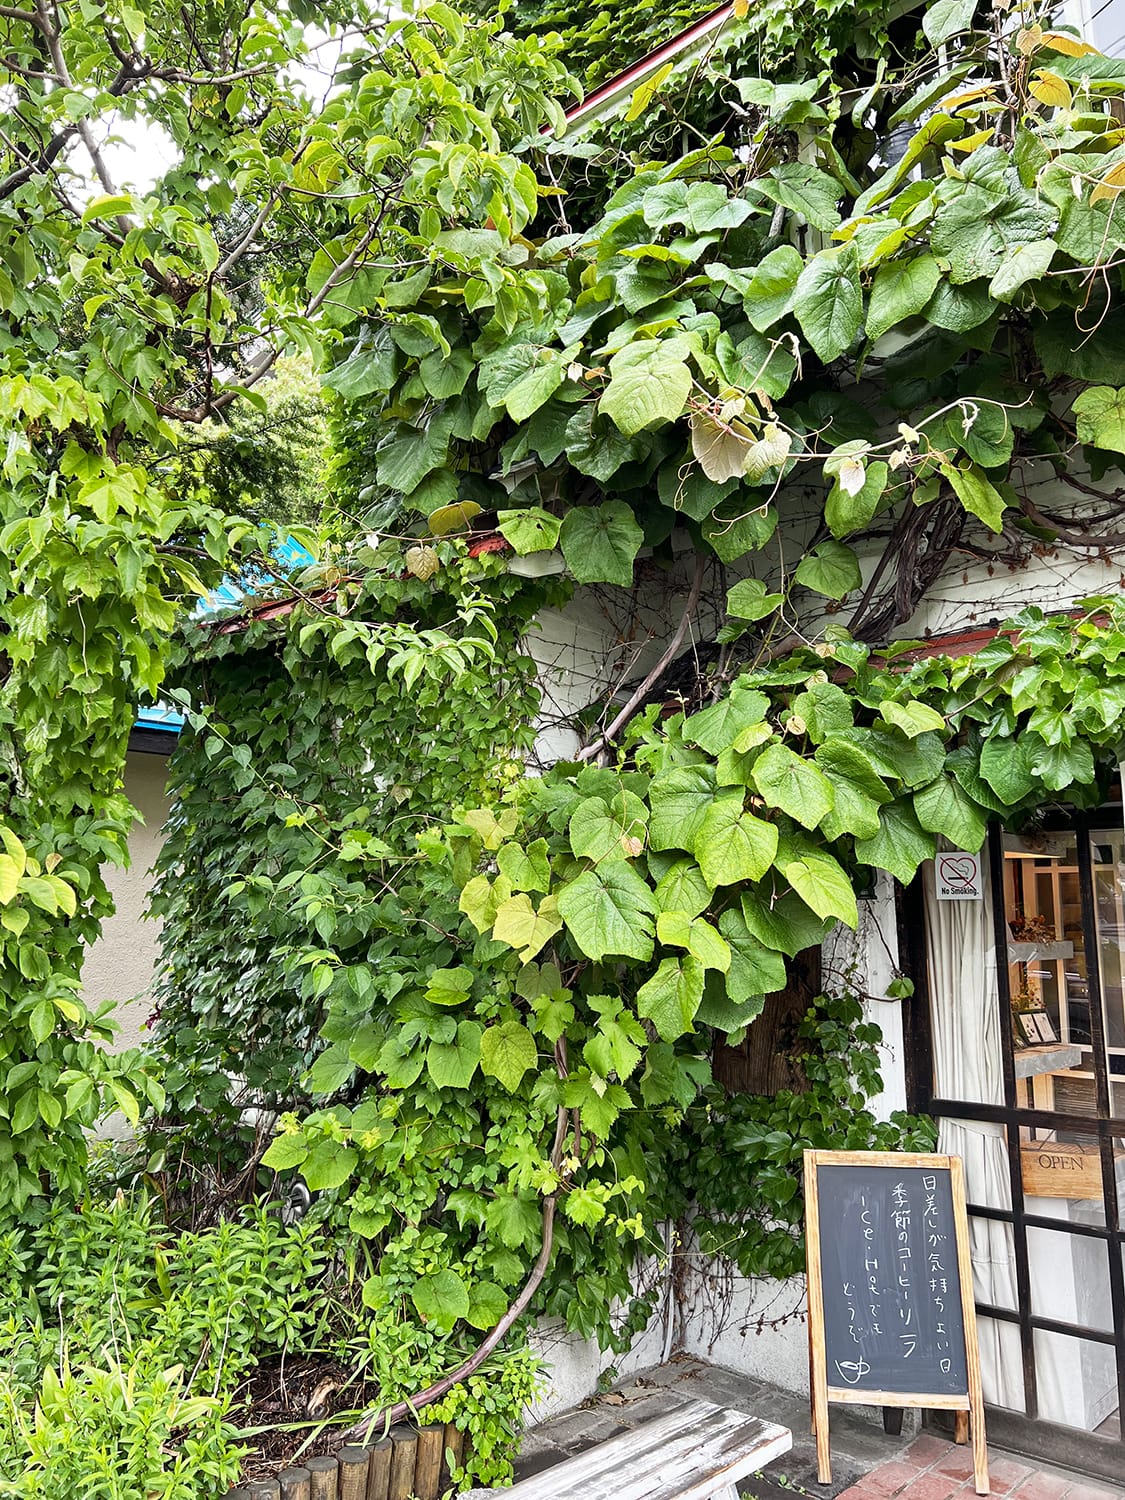 カフェ森彦の入口でひしめくヤマブドウの葉